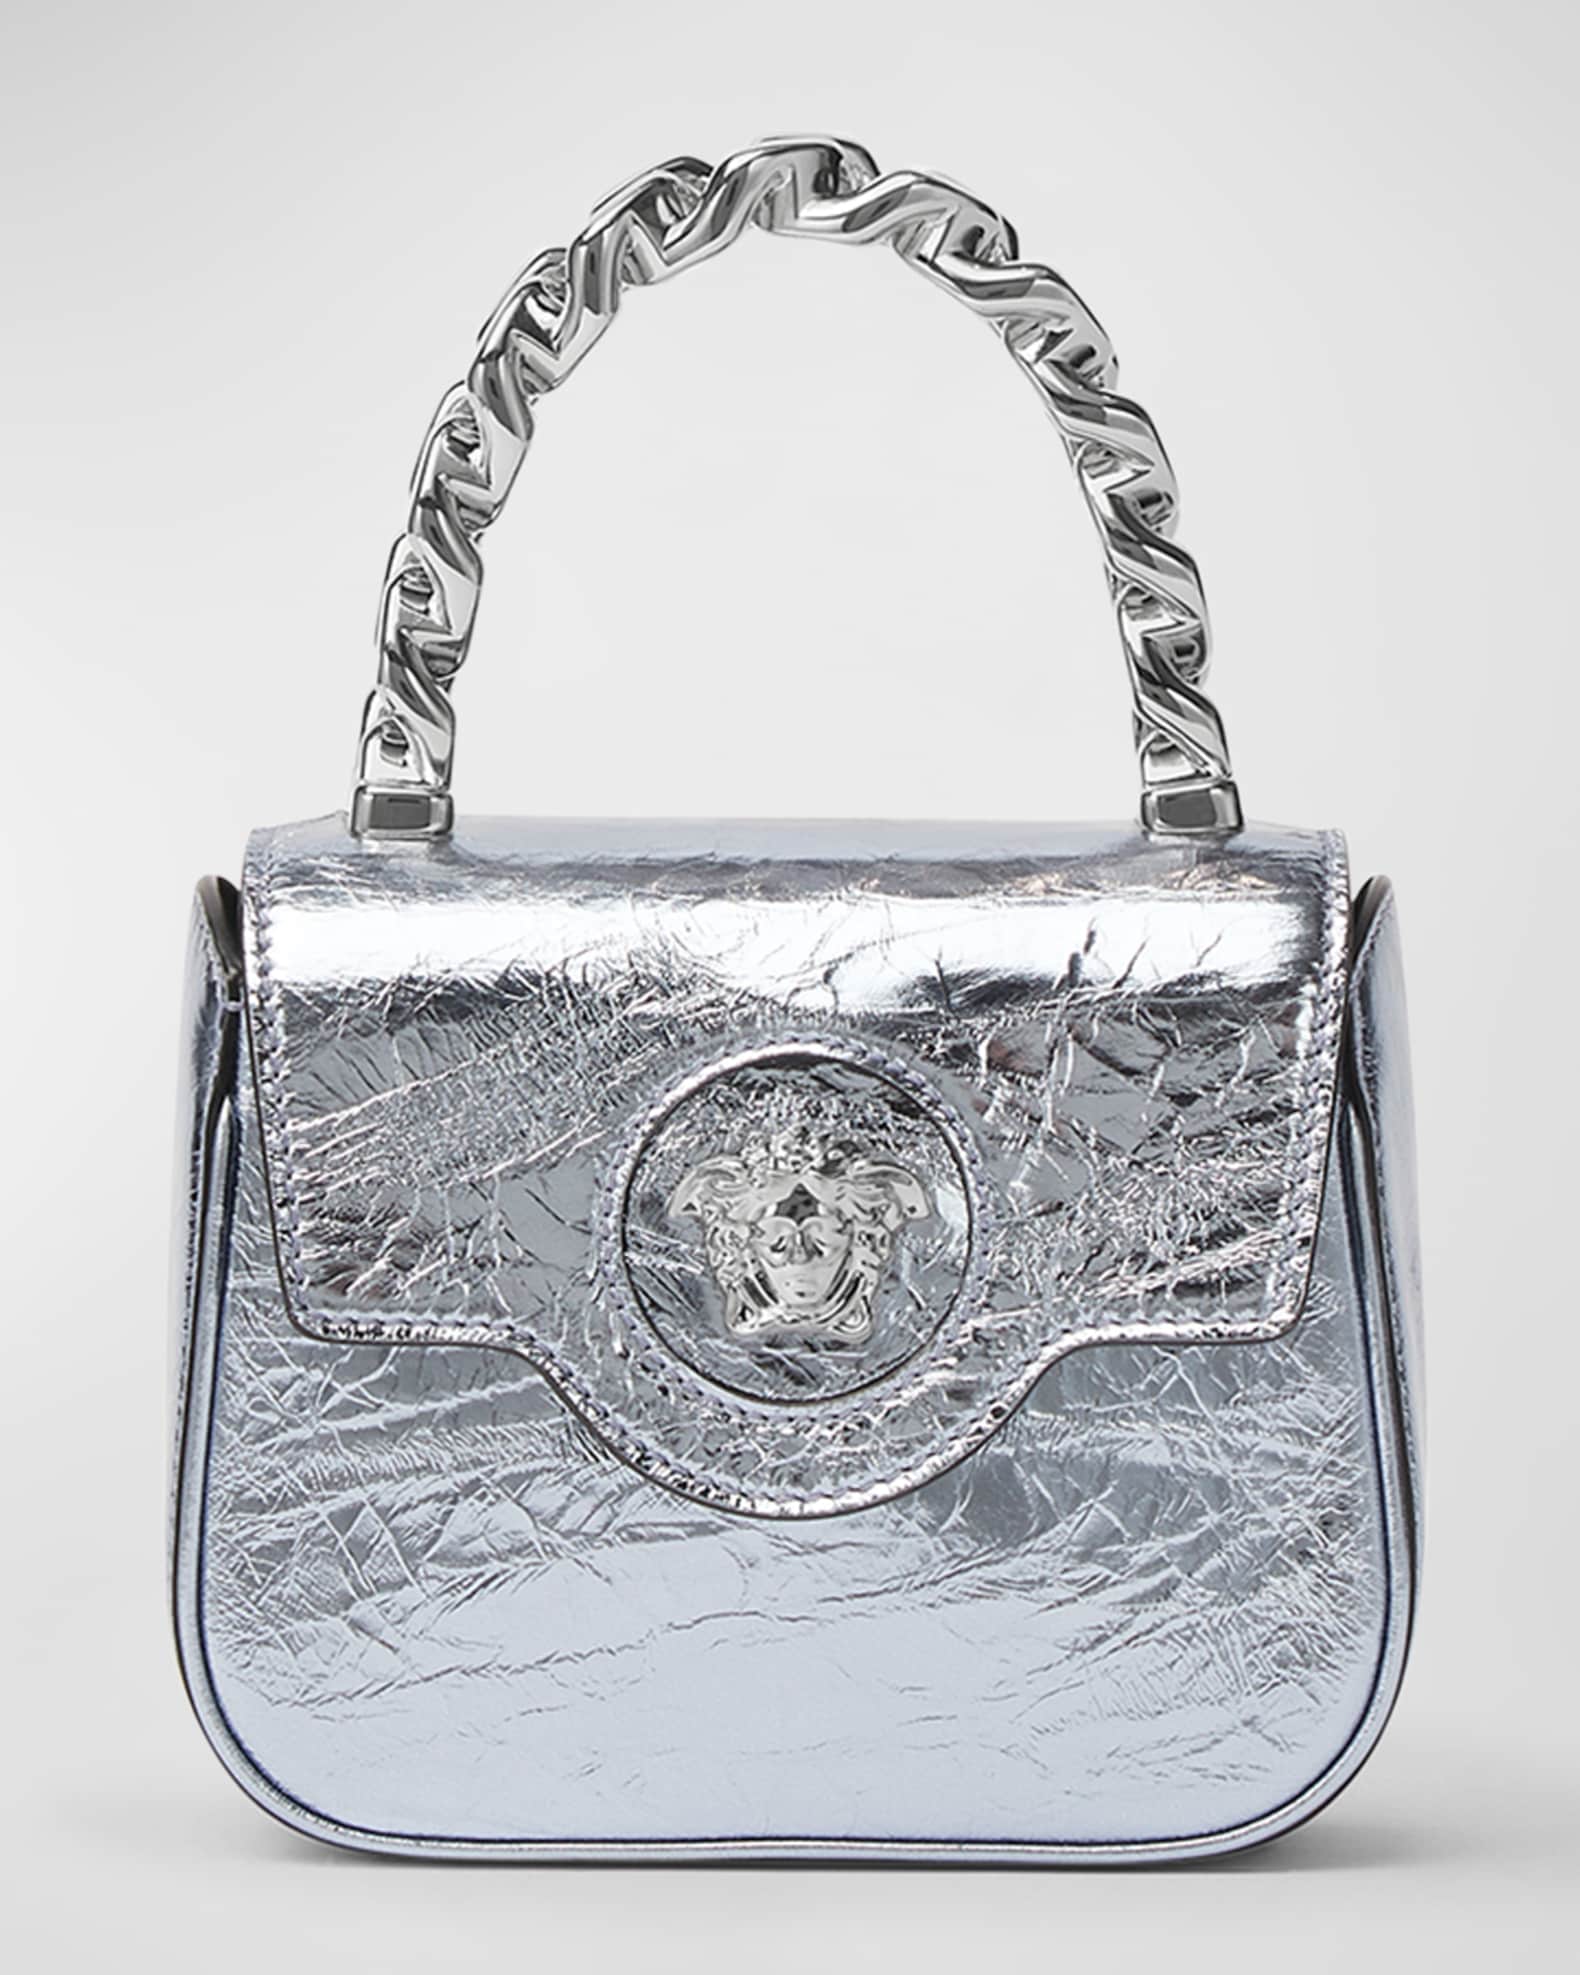 La Medusa Mini Leather Tote Bag in White - Versace